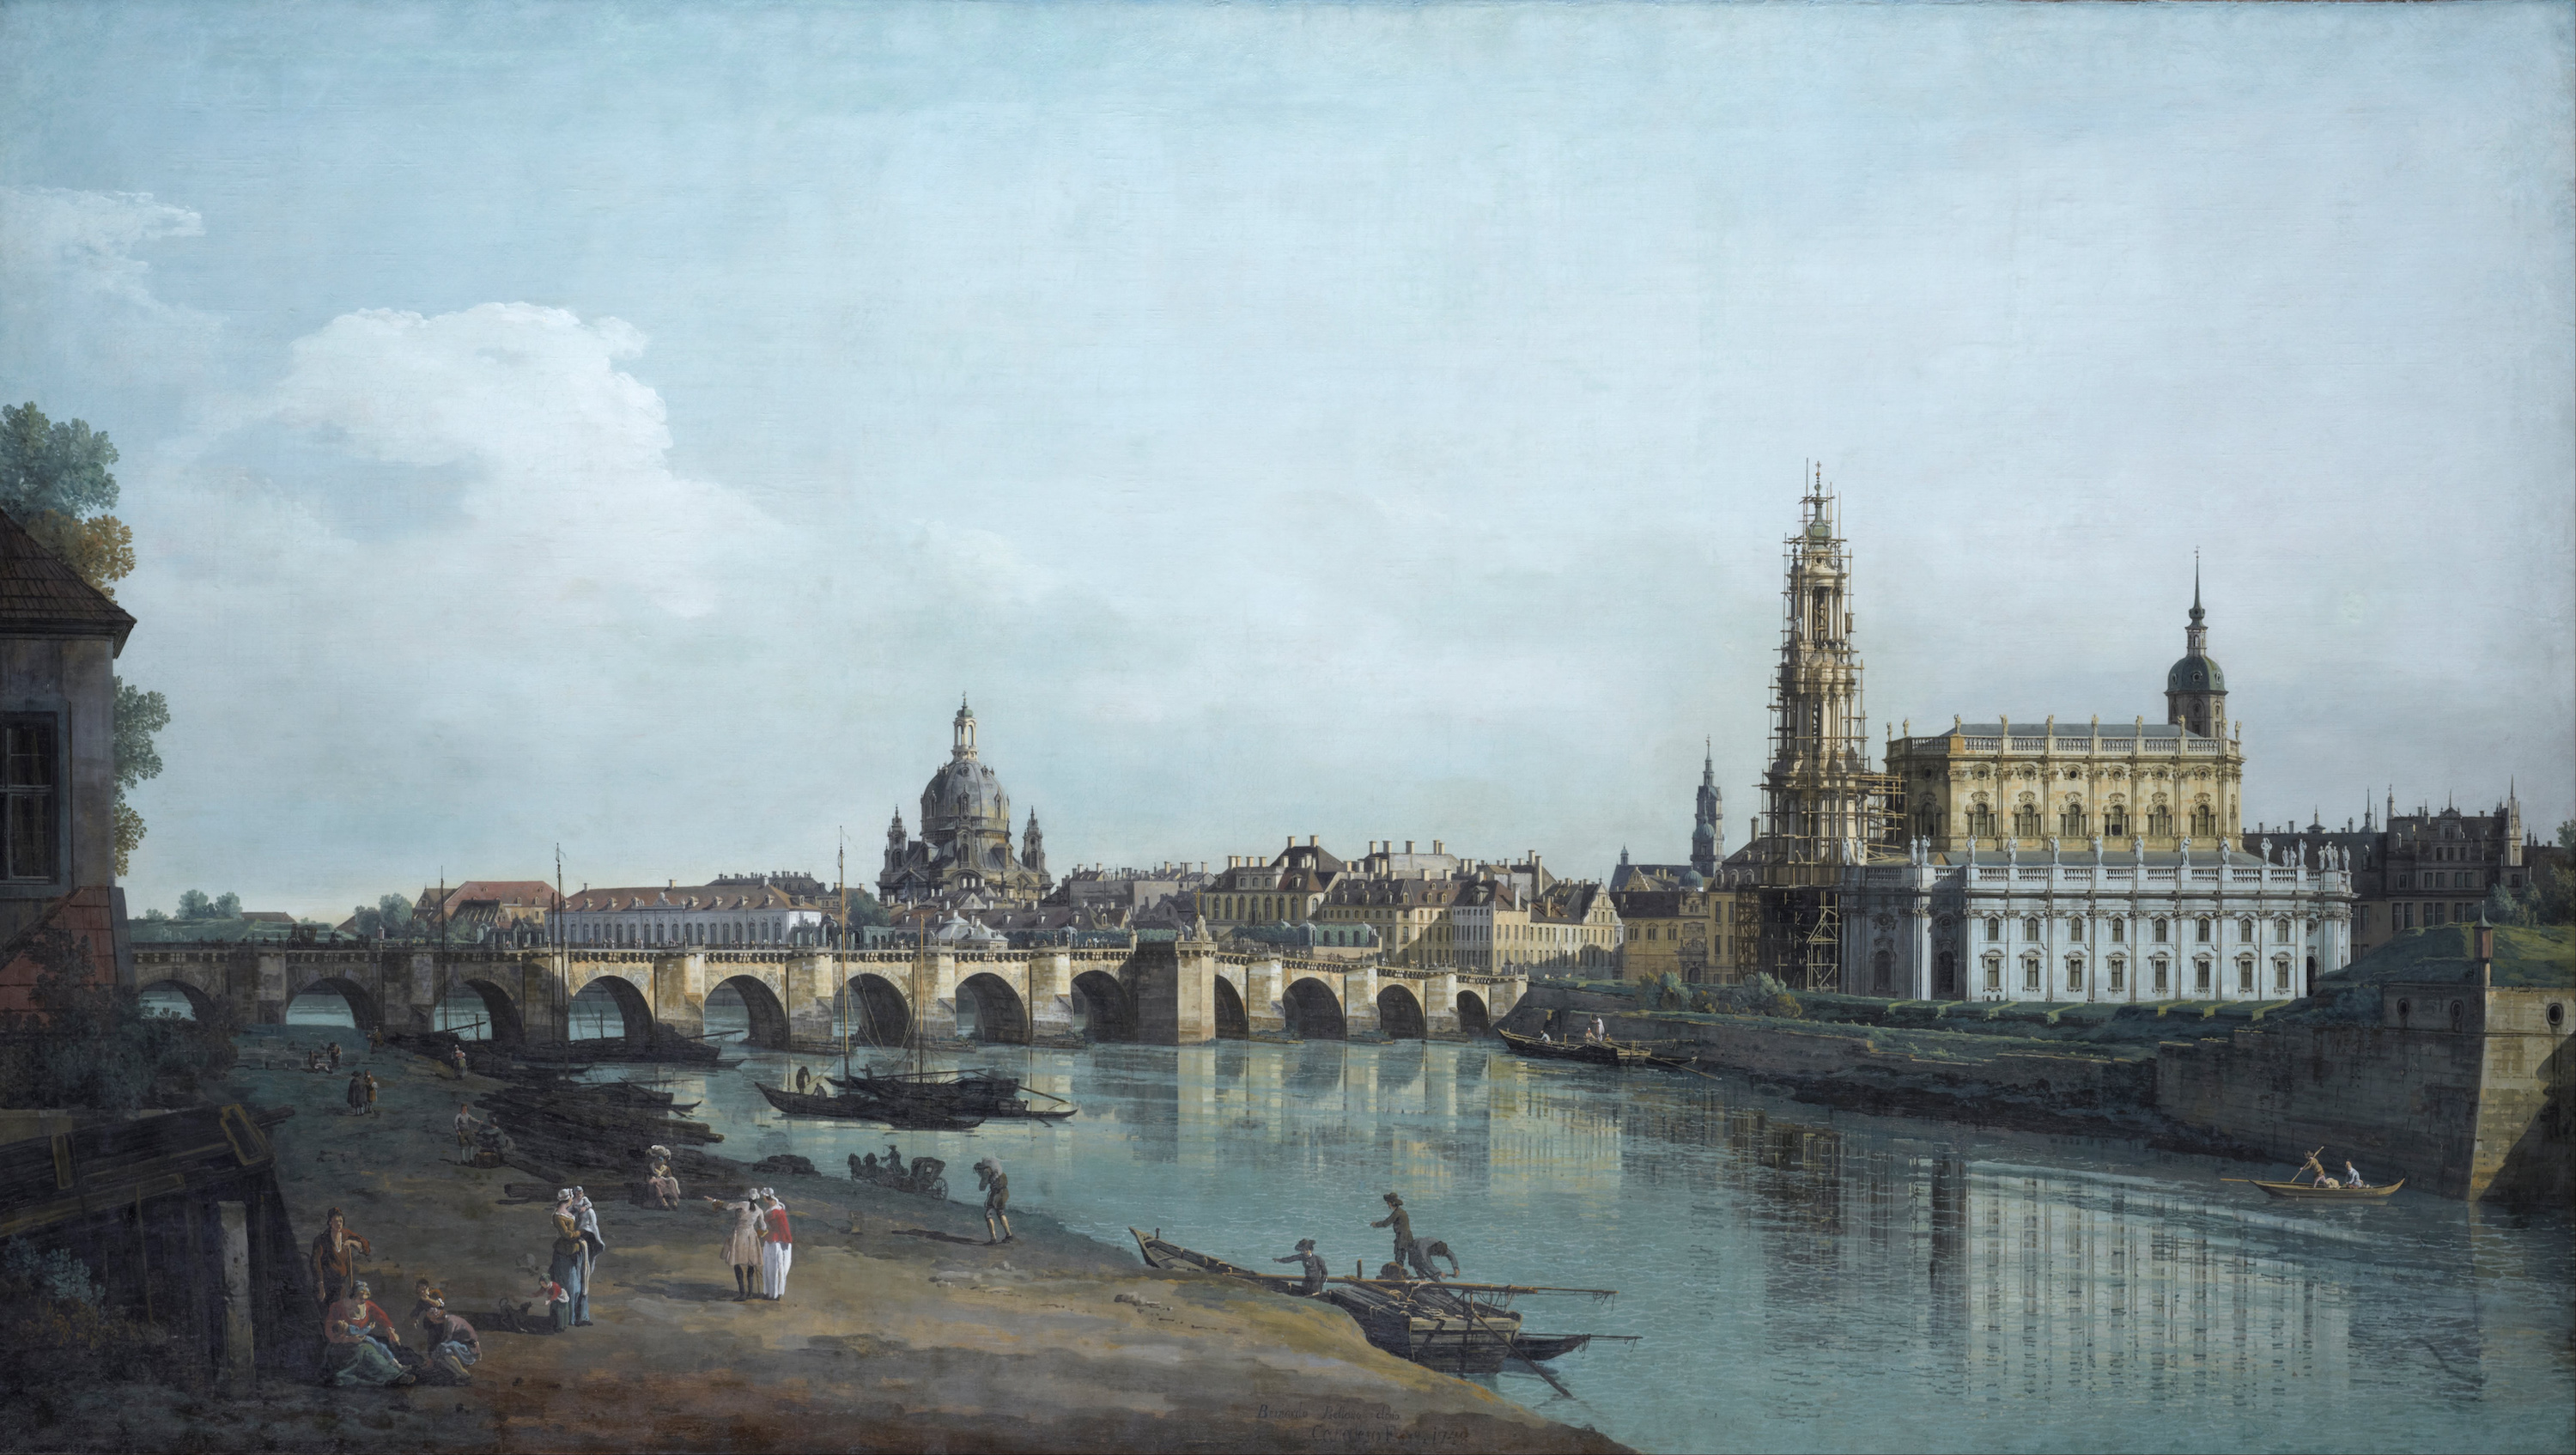 Dresde vue depuis la rive droite de l'Elbe, en-dessous le pont Auguste by Bernardo Bellotto (Canaletto) - 1748 - 1.33 x 2.37 m Staatliche Kunstsammlungen Dresden